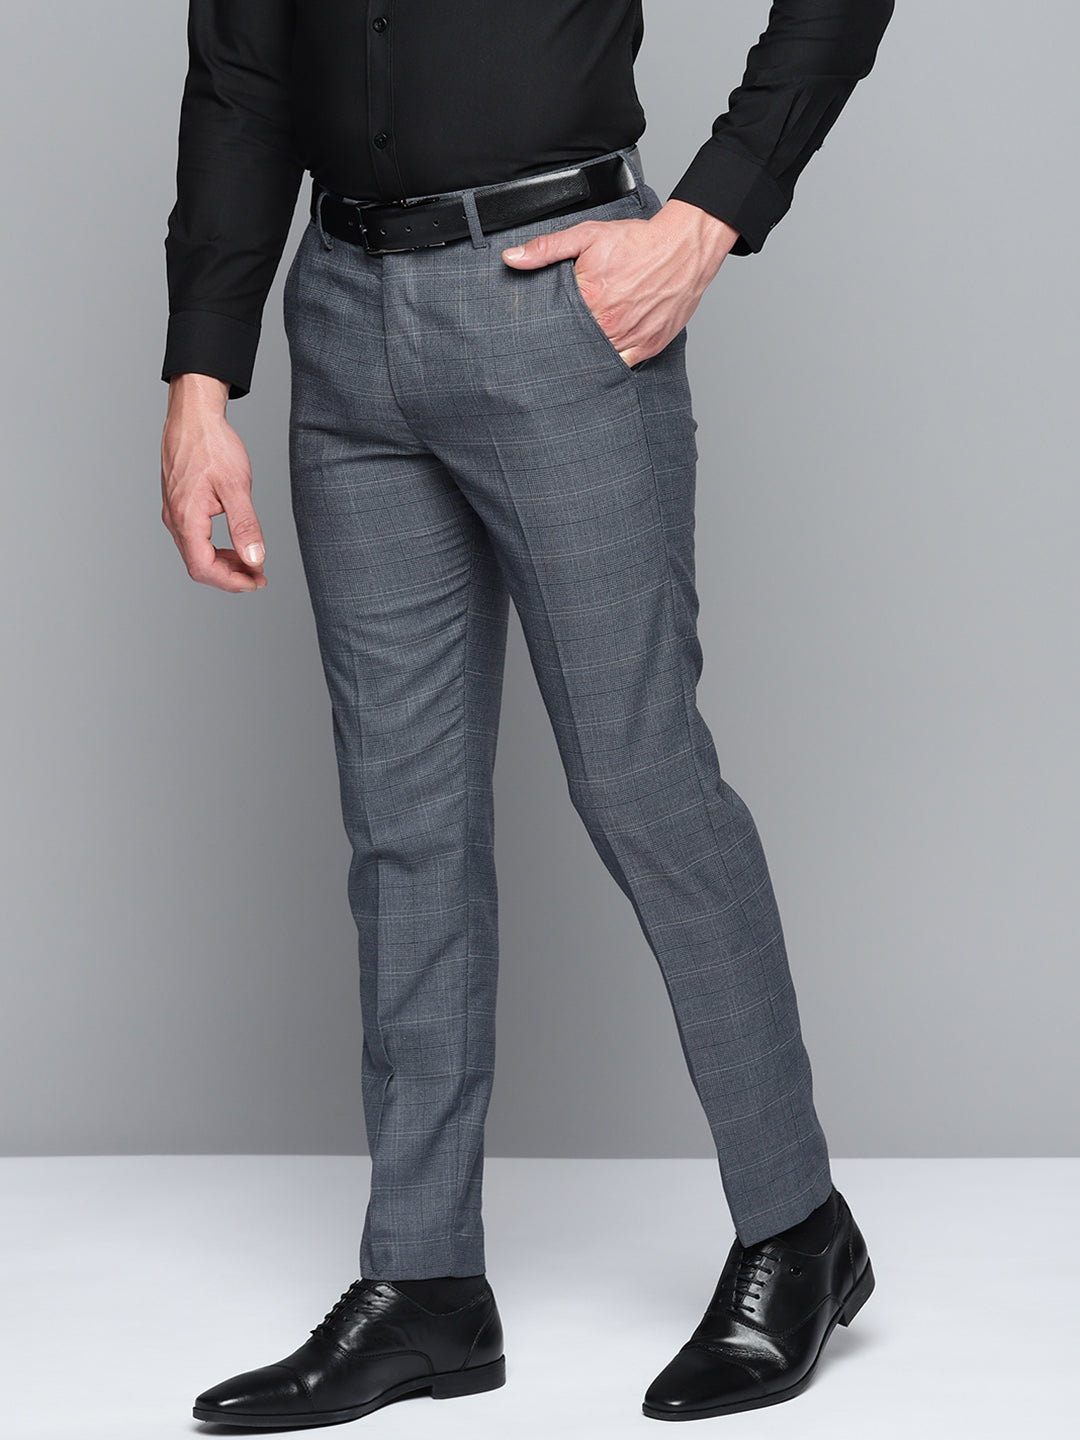 DENNISON Men Smart Self Design Tapered Fit Formal Trousers ...